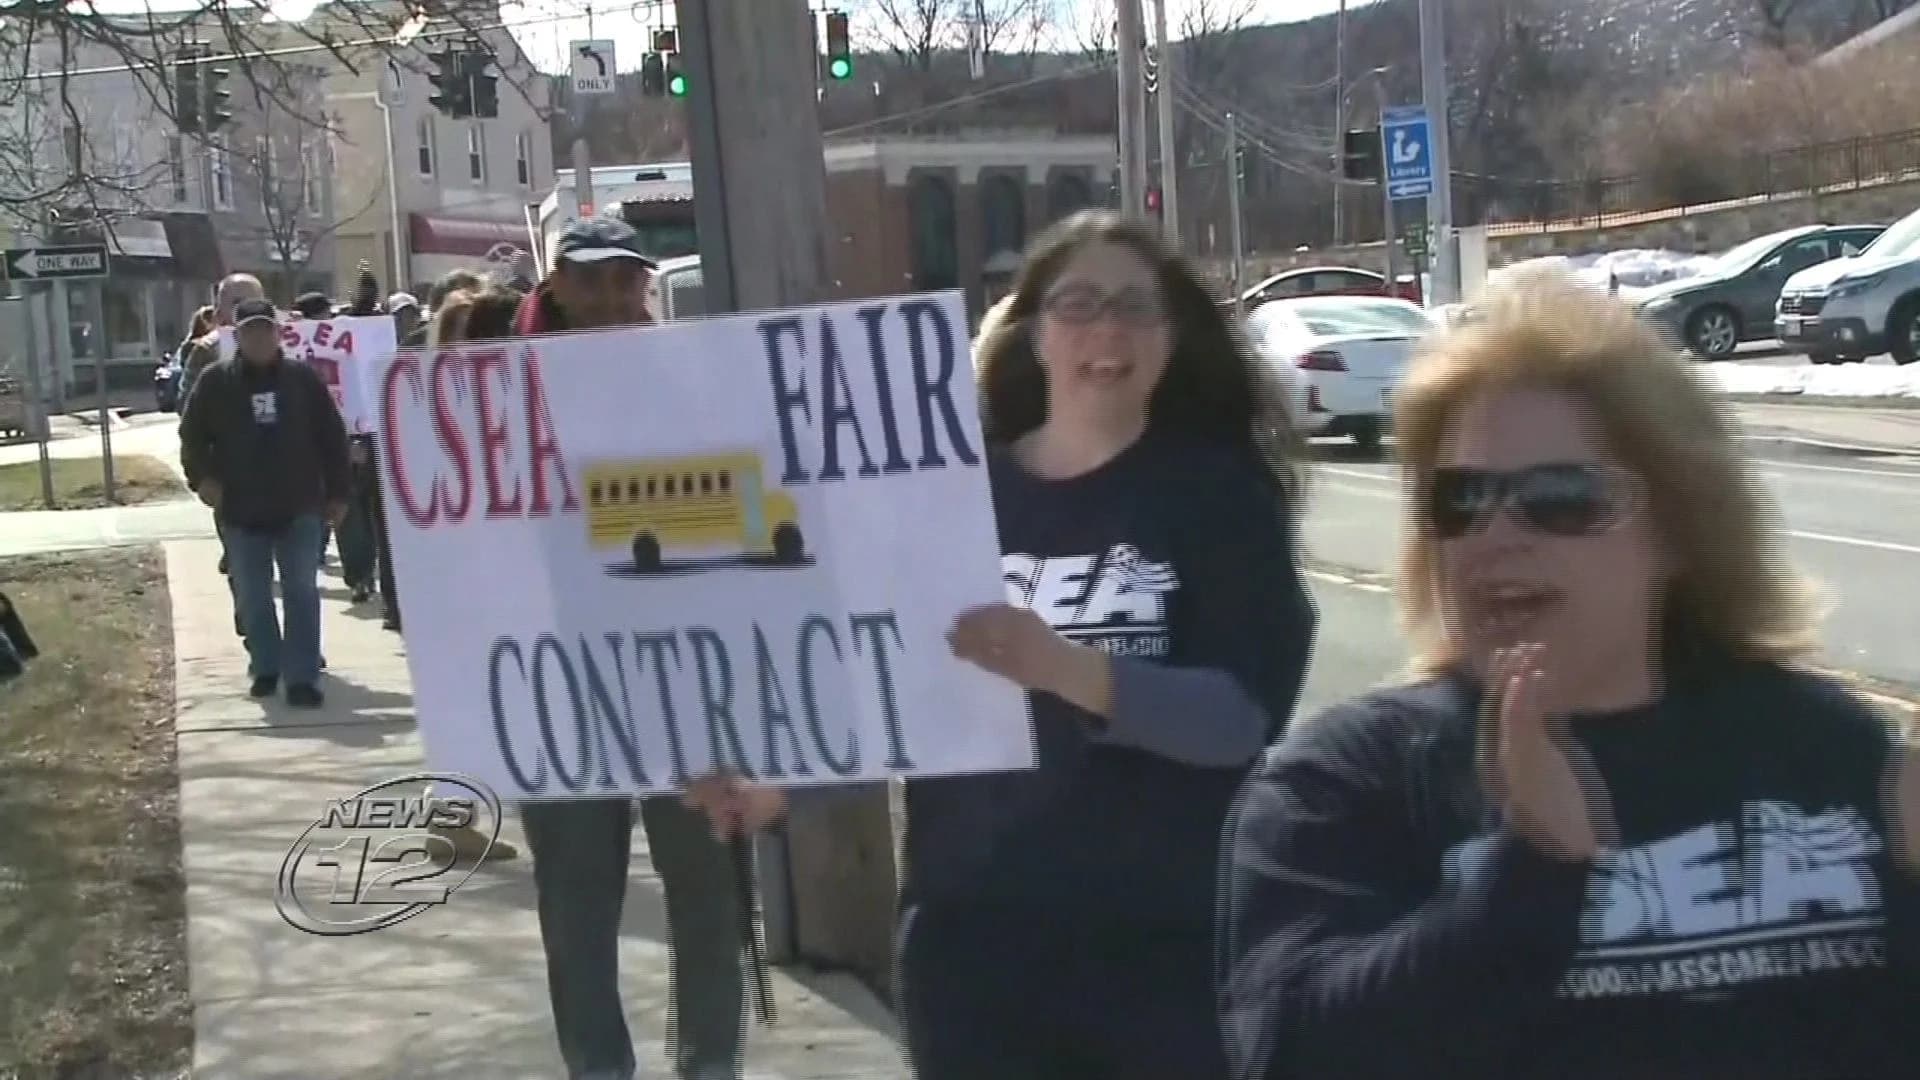 School workers demand fair contract